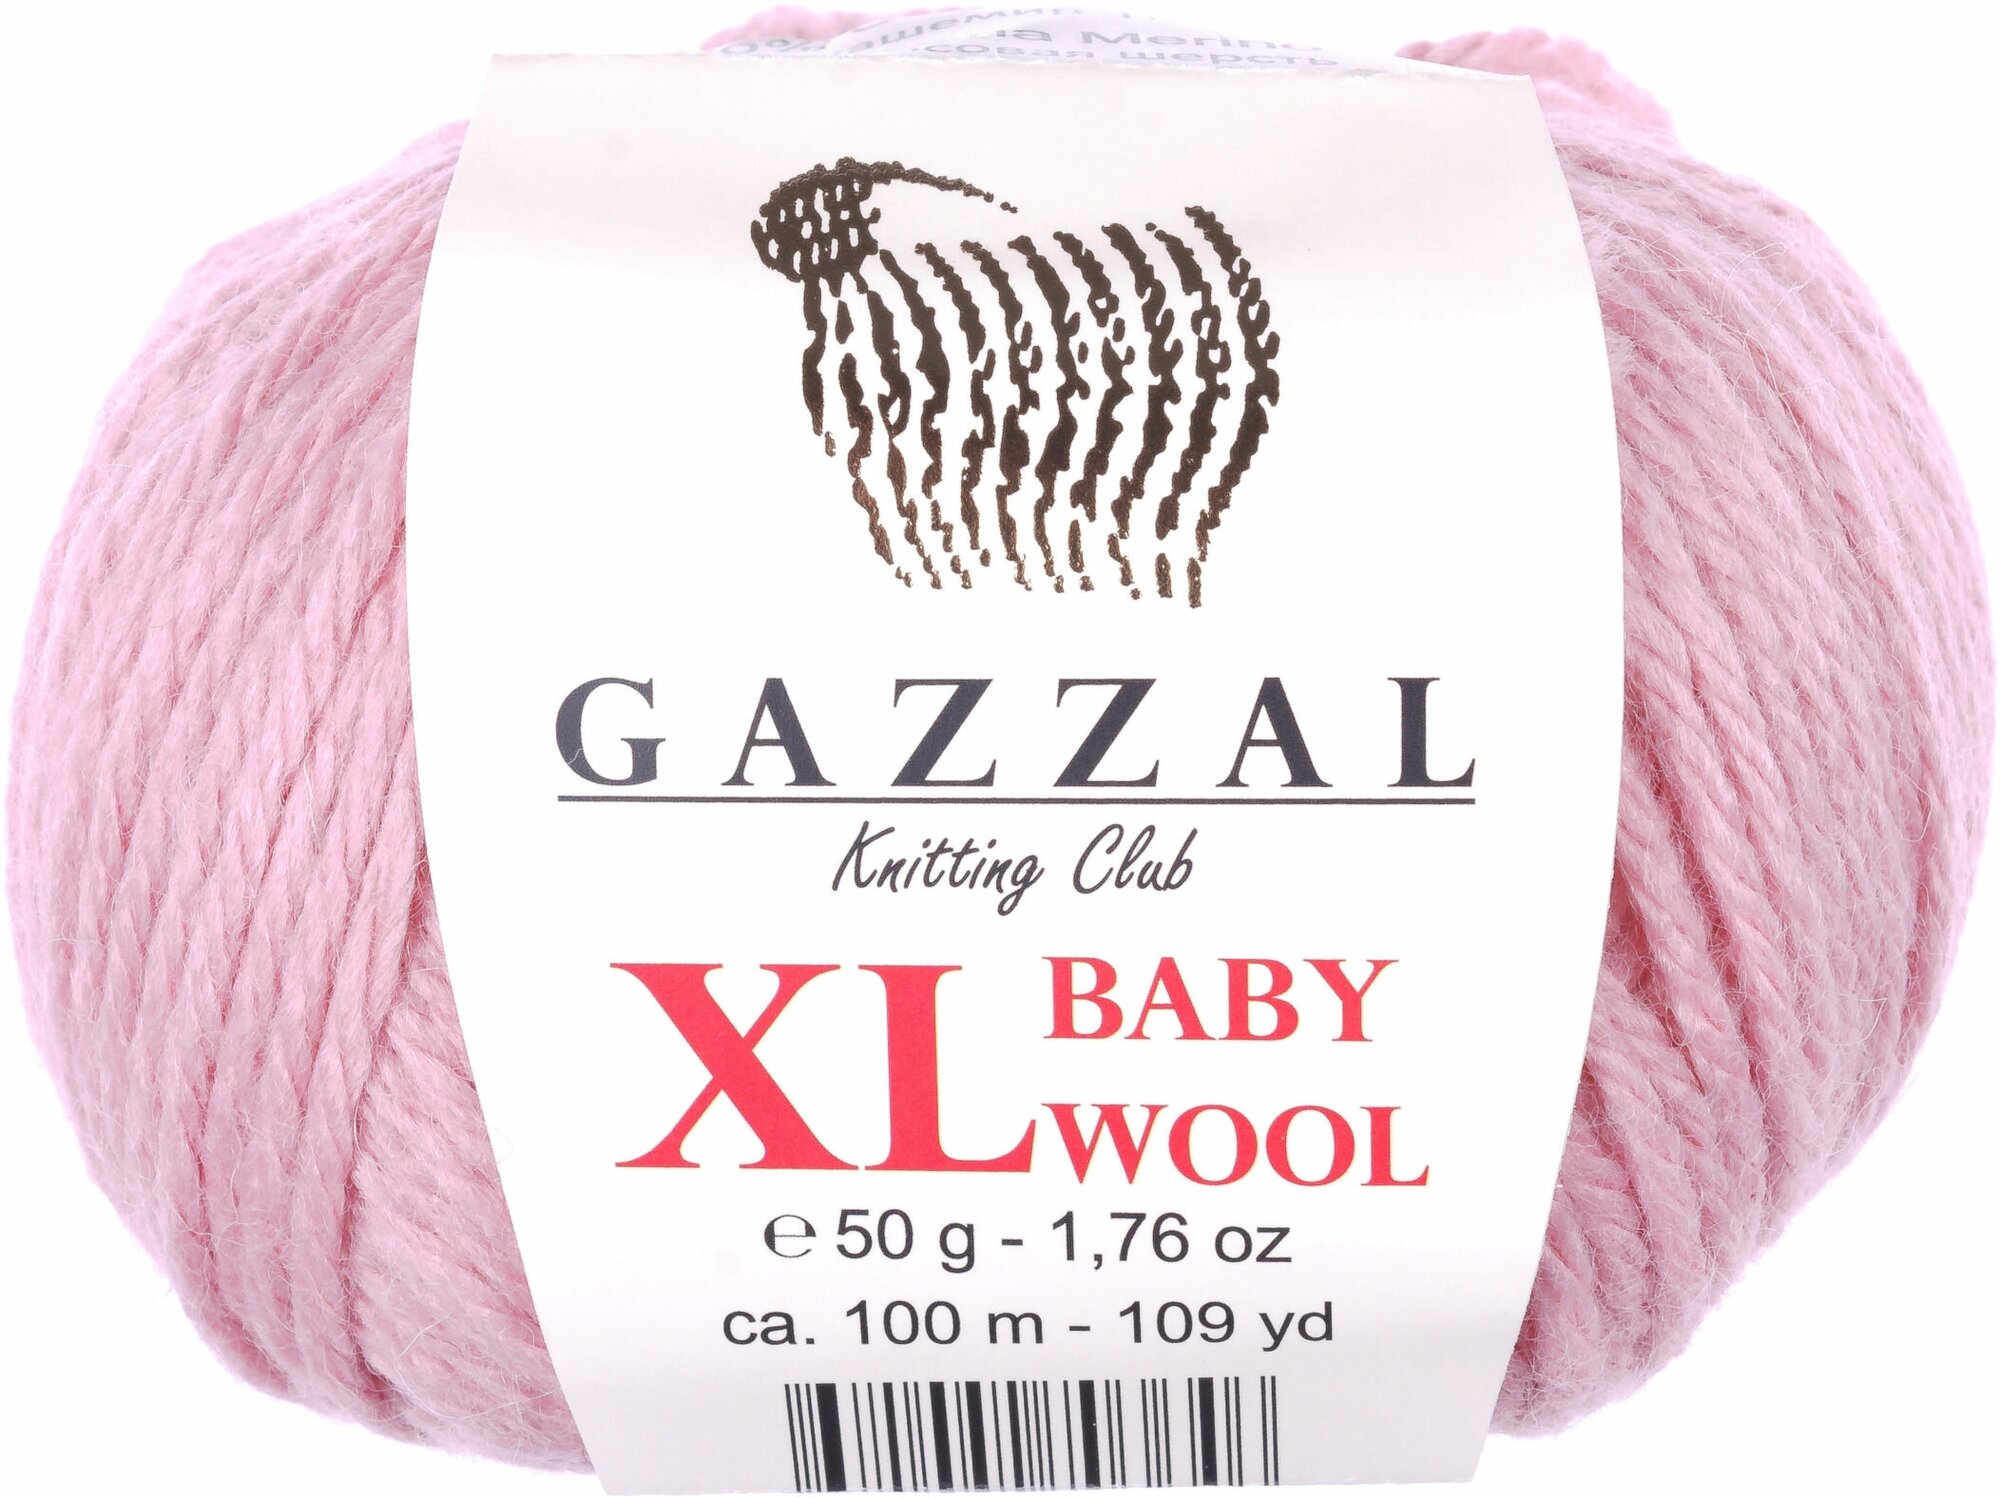 Пряжа Gazzal Baby Wool XL розовый пудровый (845), 40%шерсть мериноса/20%кашемирПА/40%акрил, 100м, 50г, 1шт